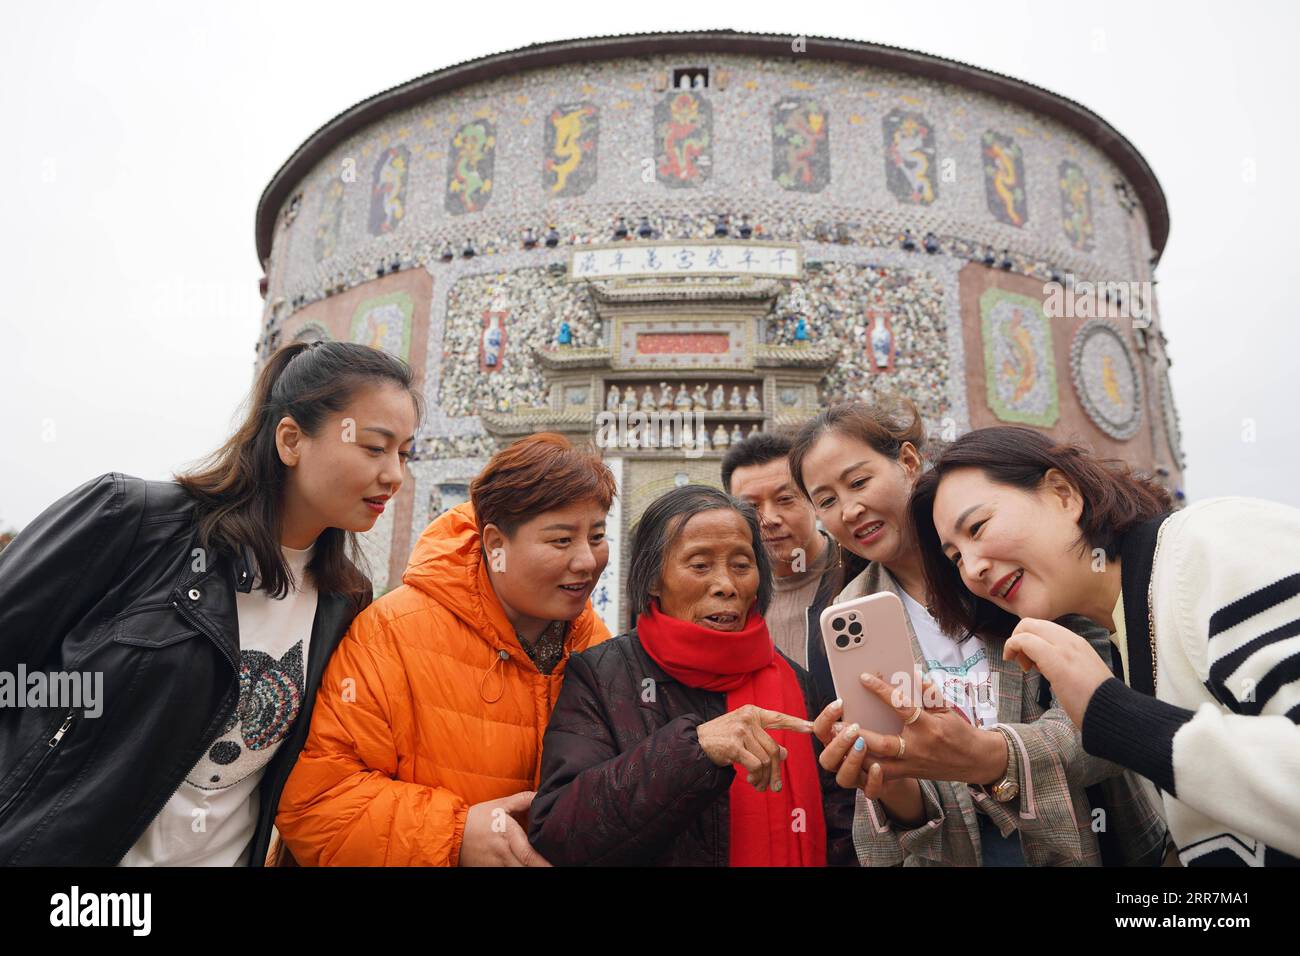 210331 -- NANCHANG, le 31 mars 2021 -- Yu Ermei 3rd L prend des photos avec des touristes devant son palais de porcelaine dans le village de Xinping du comté de Fuliang à Jingdezhen, province du Jiangxi, dans l'est de la Chine, le 18 mars 2021. Yu Ermei, une villageoise de 91 ans qui travaillait autrefois dans une manufacture de porcelaine, a commencé à construire ses palais de porcelaine dans le village de Xinping à partir de 2011. Grâce à ses efforts, quatre bâtiments décorés de porcelaine et de pièces de porcelaine se dressent maintenant dans le village, attirant de nombreux touristes à visiter. CHINE-JIANGXI-JINGDEZHEN-PORCELAINE PALACESCN ZhouxMi PUBLICATIONxNOTxINxCHN Banque D'Images